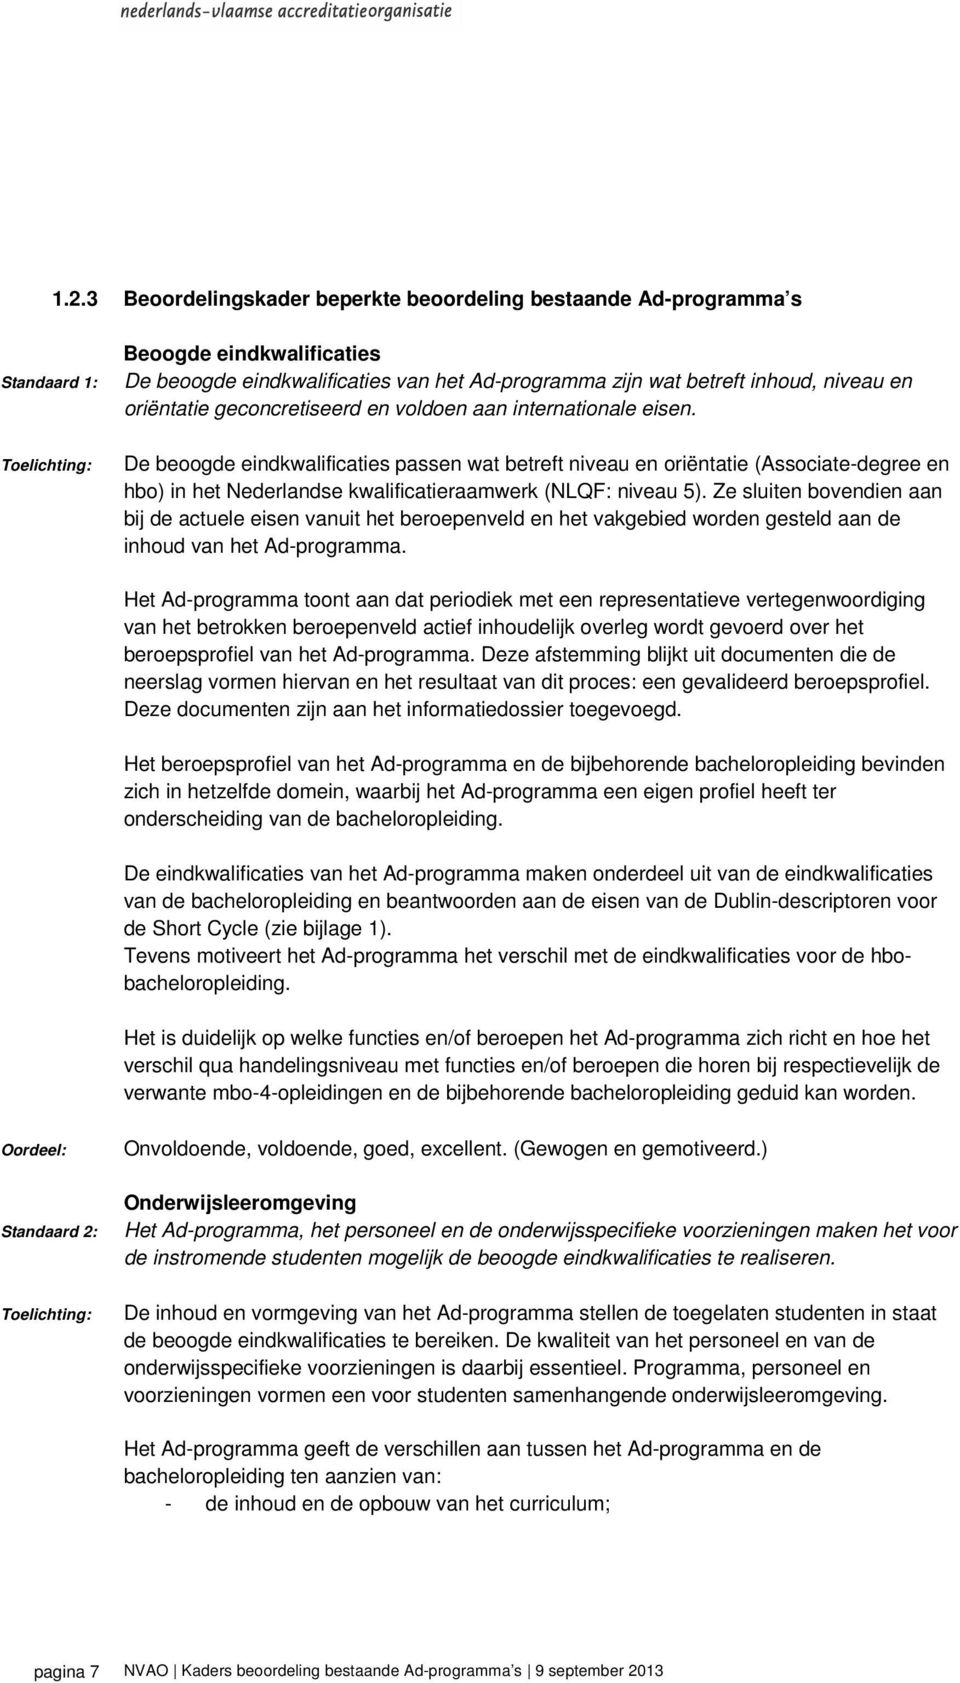 De beoogde eindkwalificaties passen wat betreft niveau en oriëntatie (Associate-degree en hbo) in het Nederlandse kwalificatieraamwerk (NLQF: niveau 5).